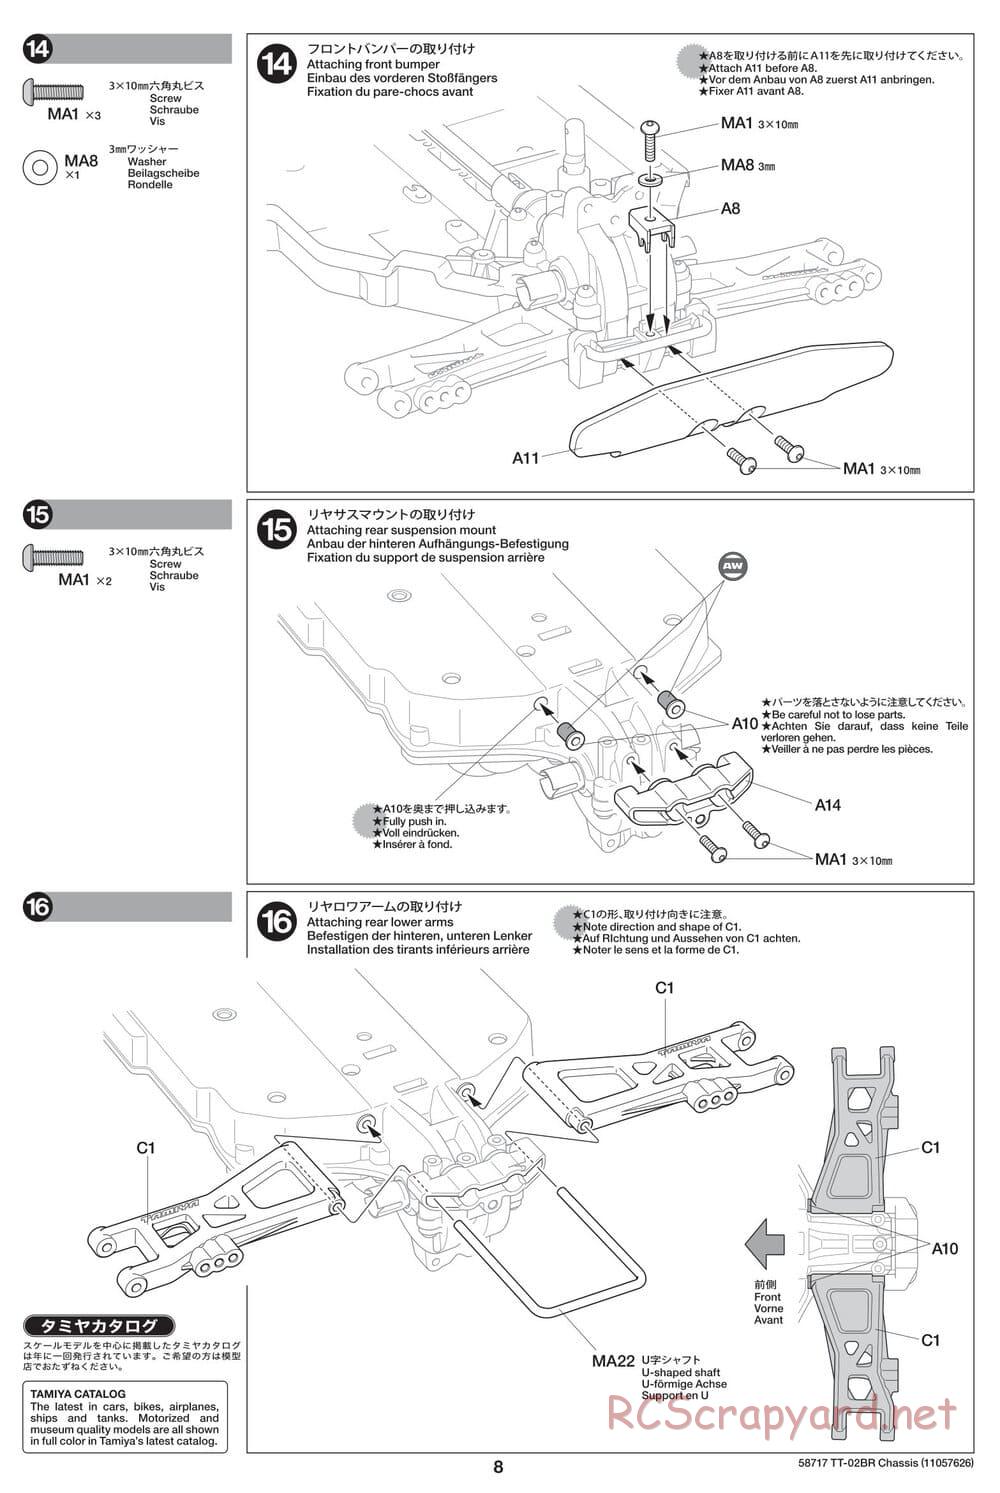 Tamiya - TT-02BR Chassis - Manual - Page 8